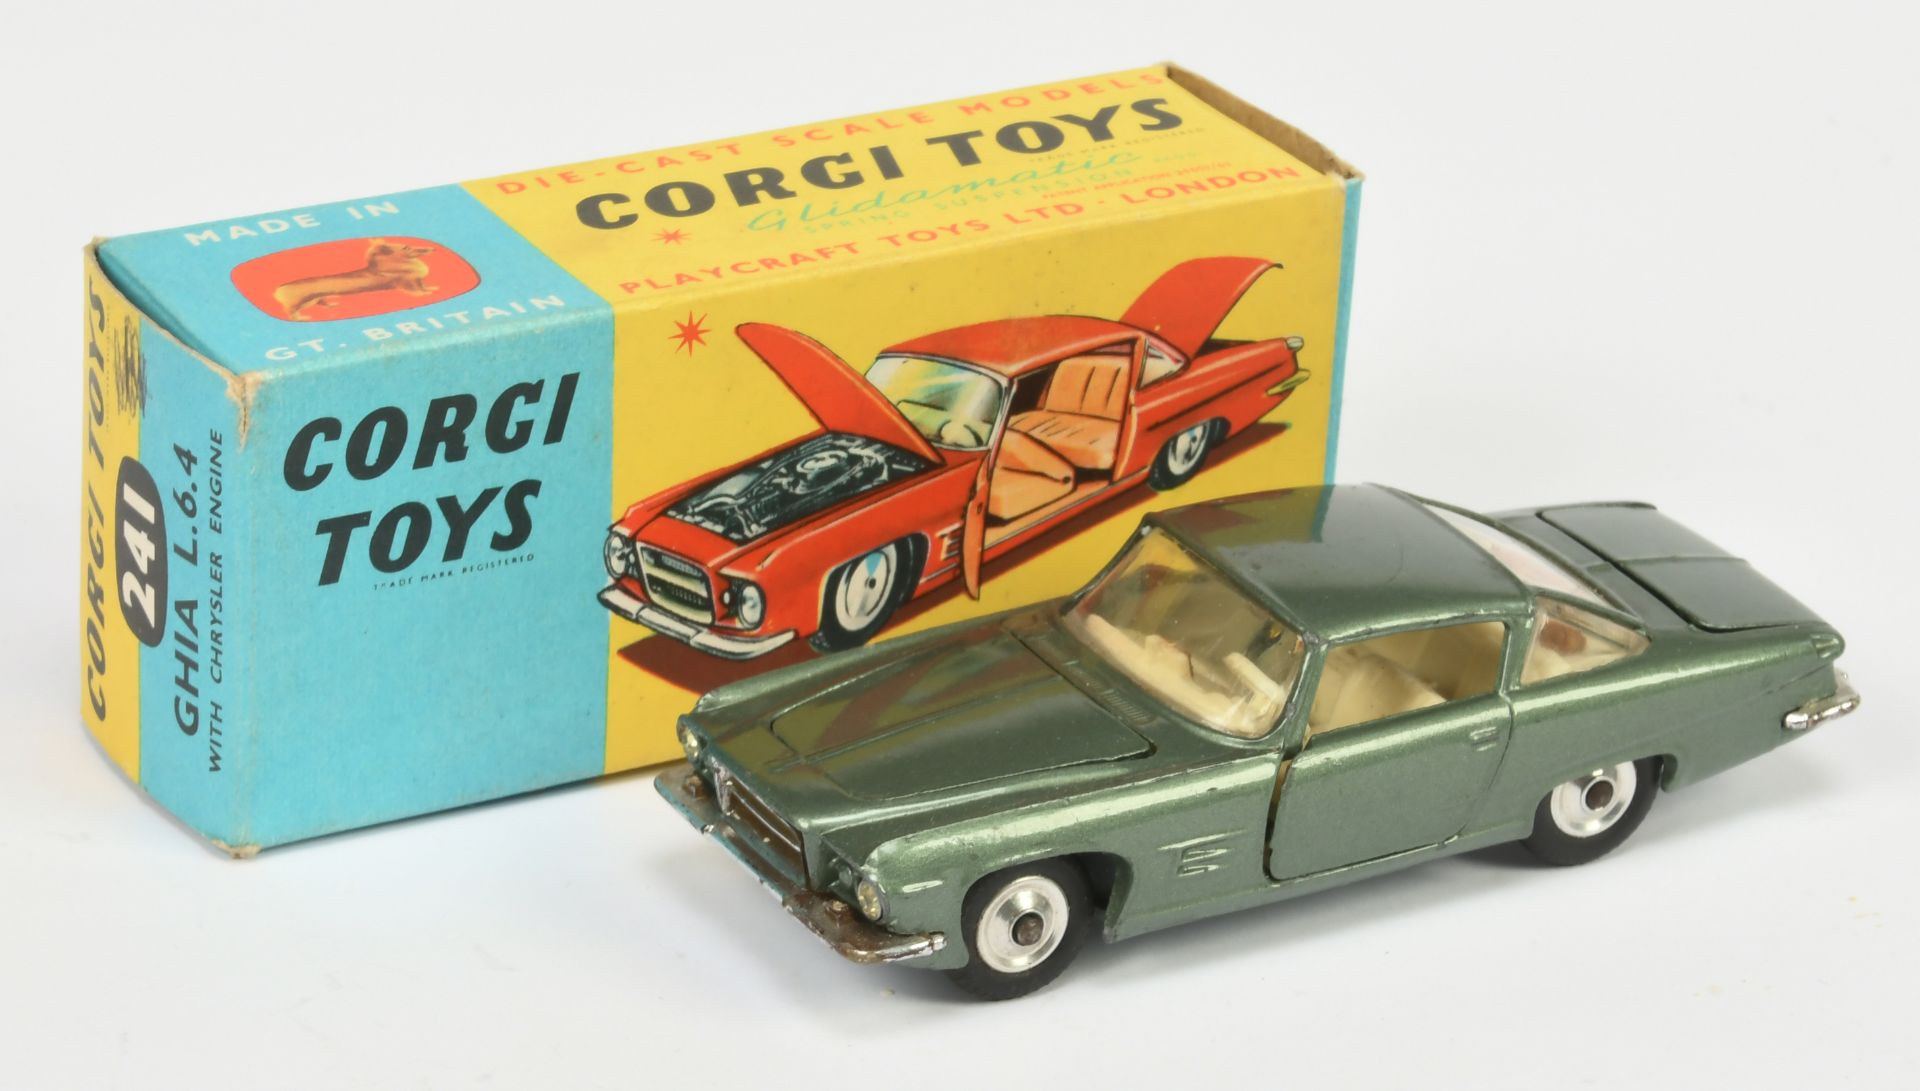 Corgi Toys  241 Ghia L.6.4 - Green body, off white interior, chrome trim, spun hubs - Good Plus b...